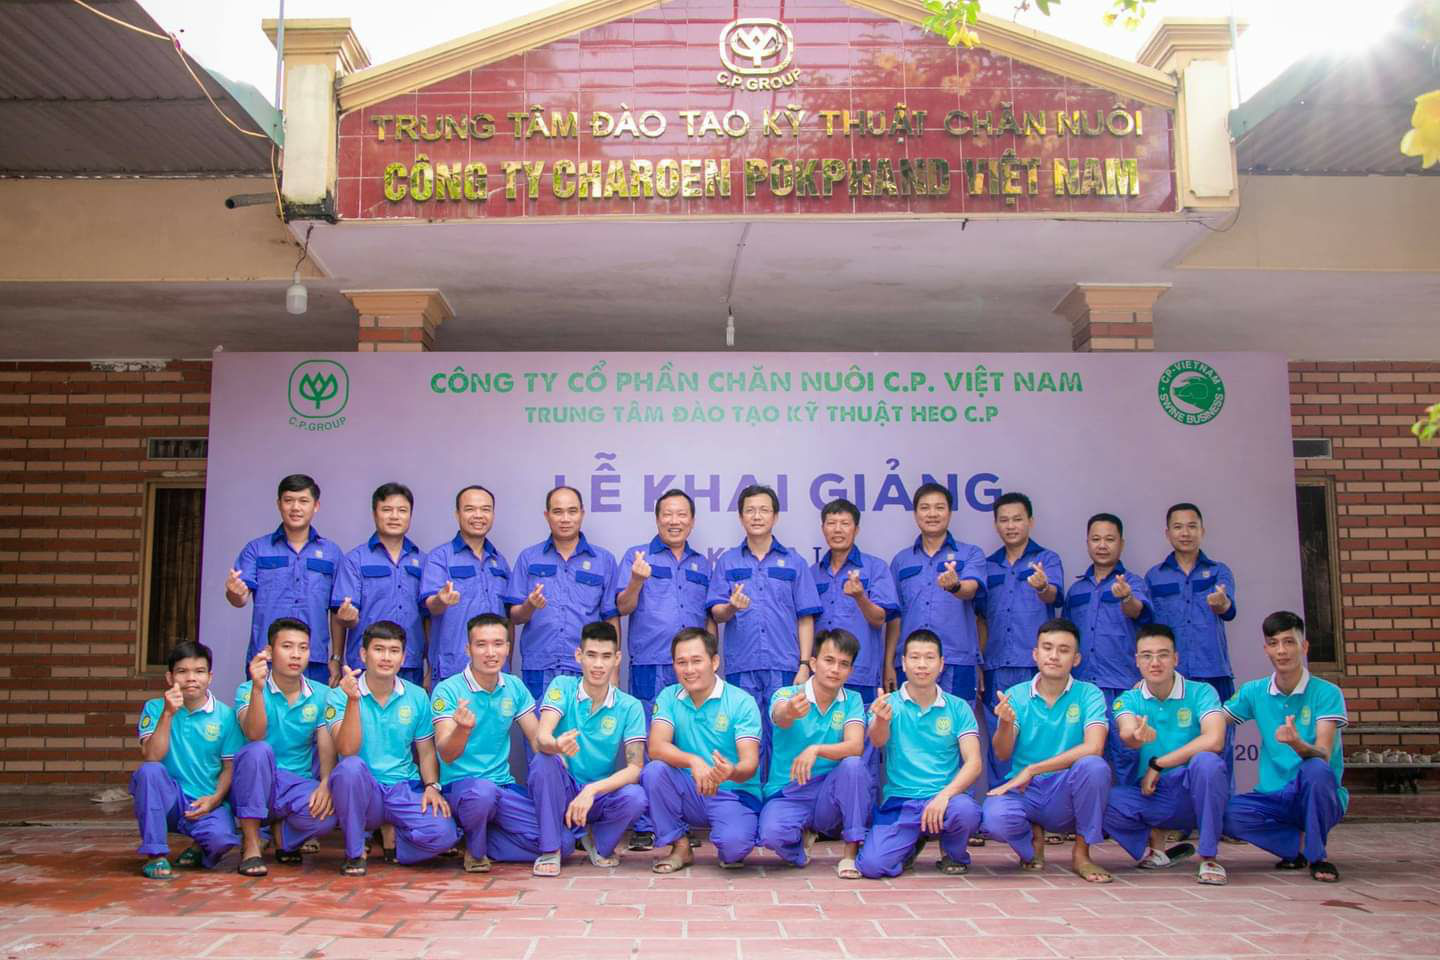 C.P. Việt Nam nhận danh hiệu “Doanh nghiệp đồng hành cùng nhà nông” - Ảnh 3.